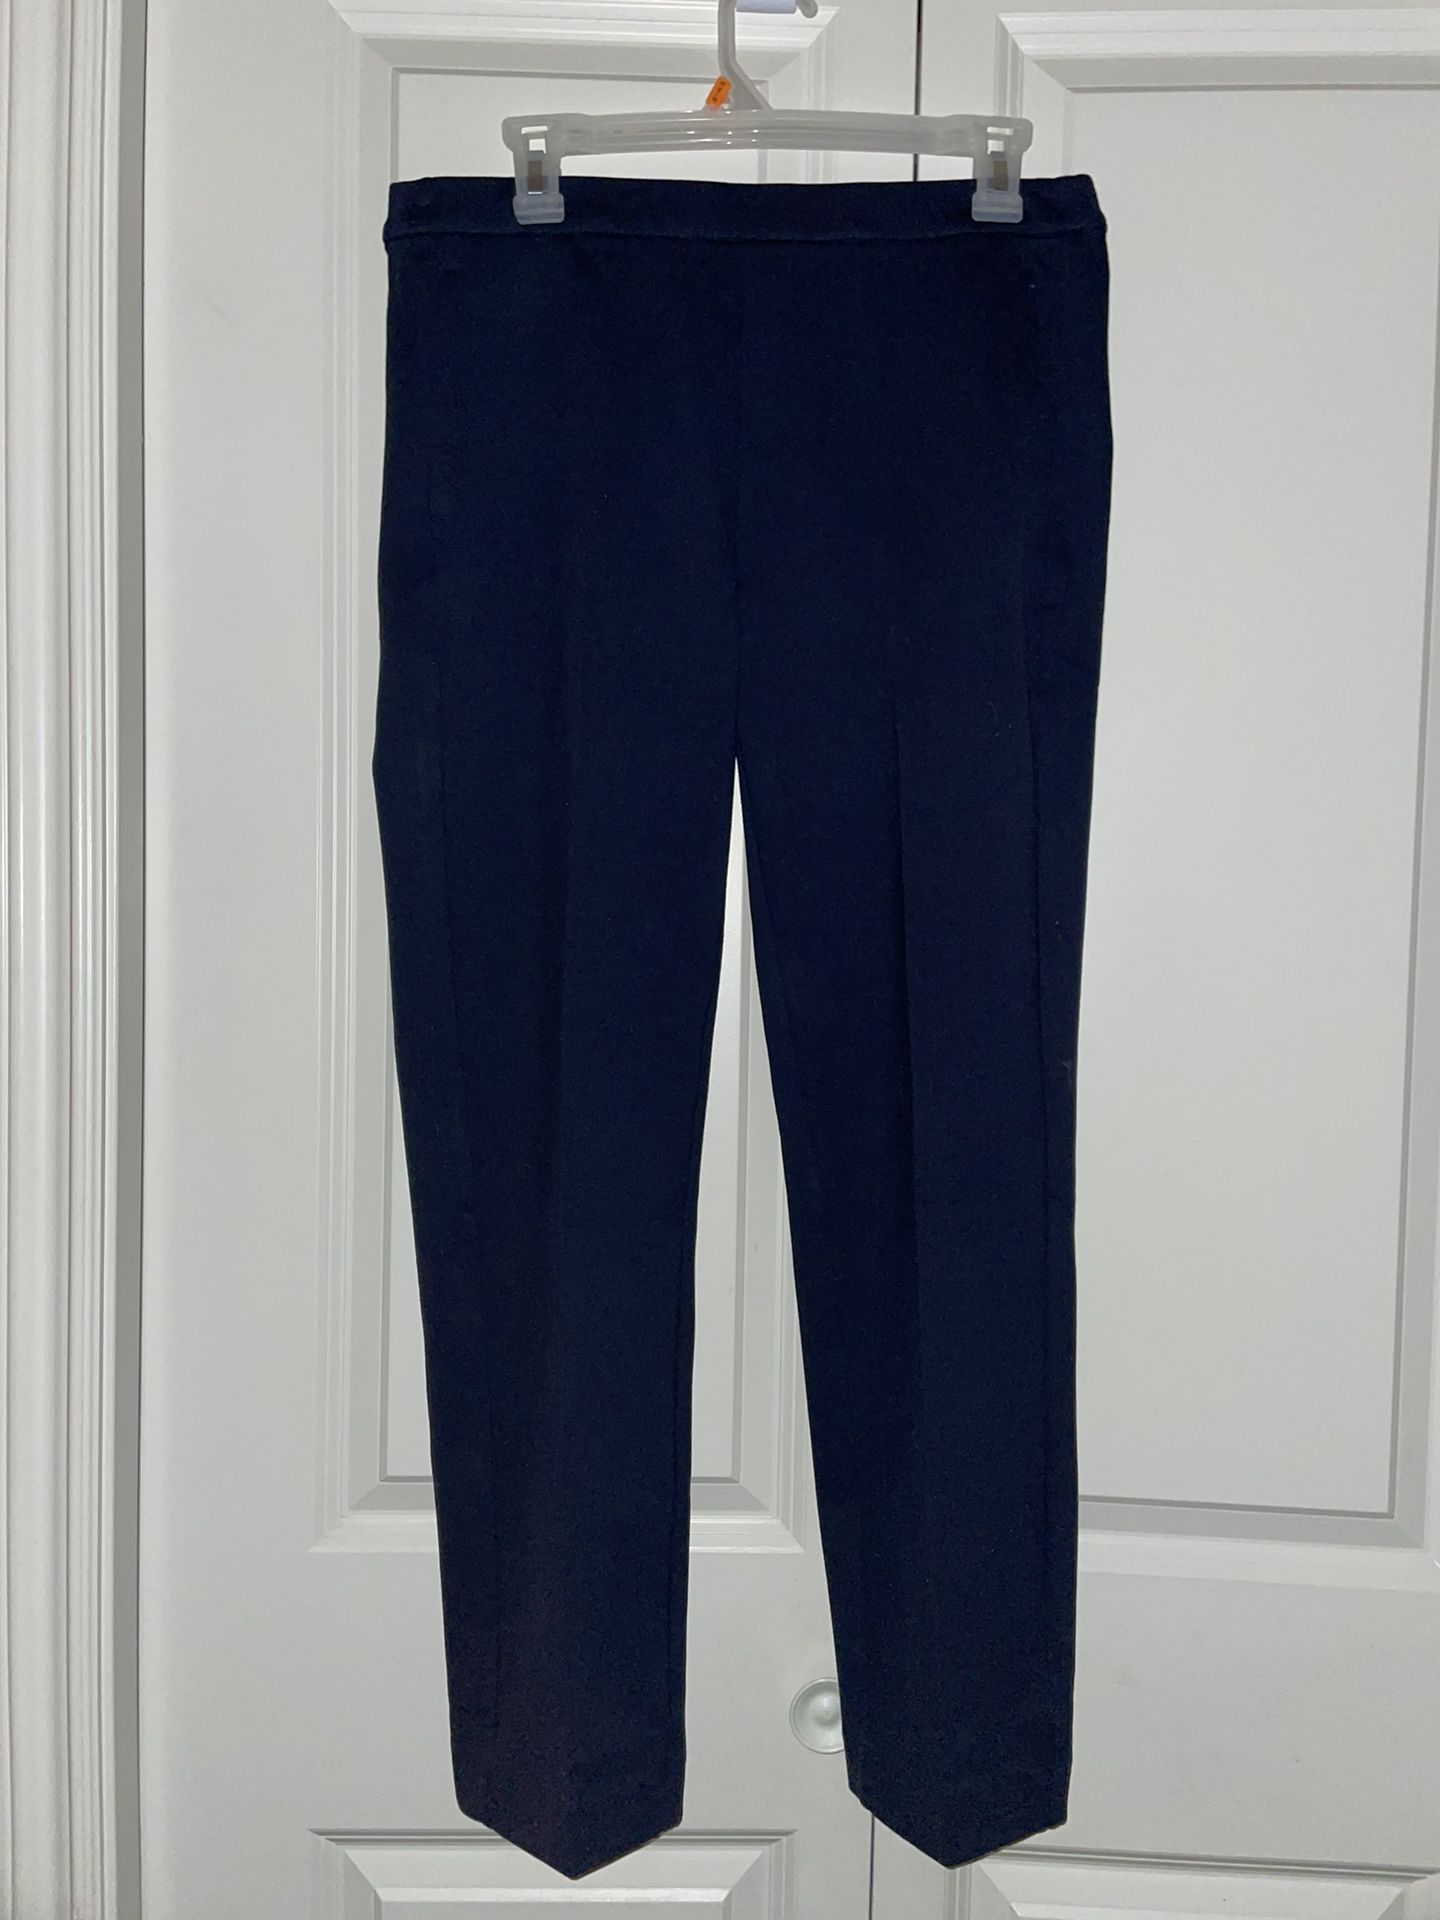 Dark Blue Dress Pants for Sale in Redmond, WA - OfferUp